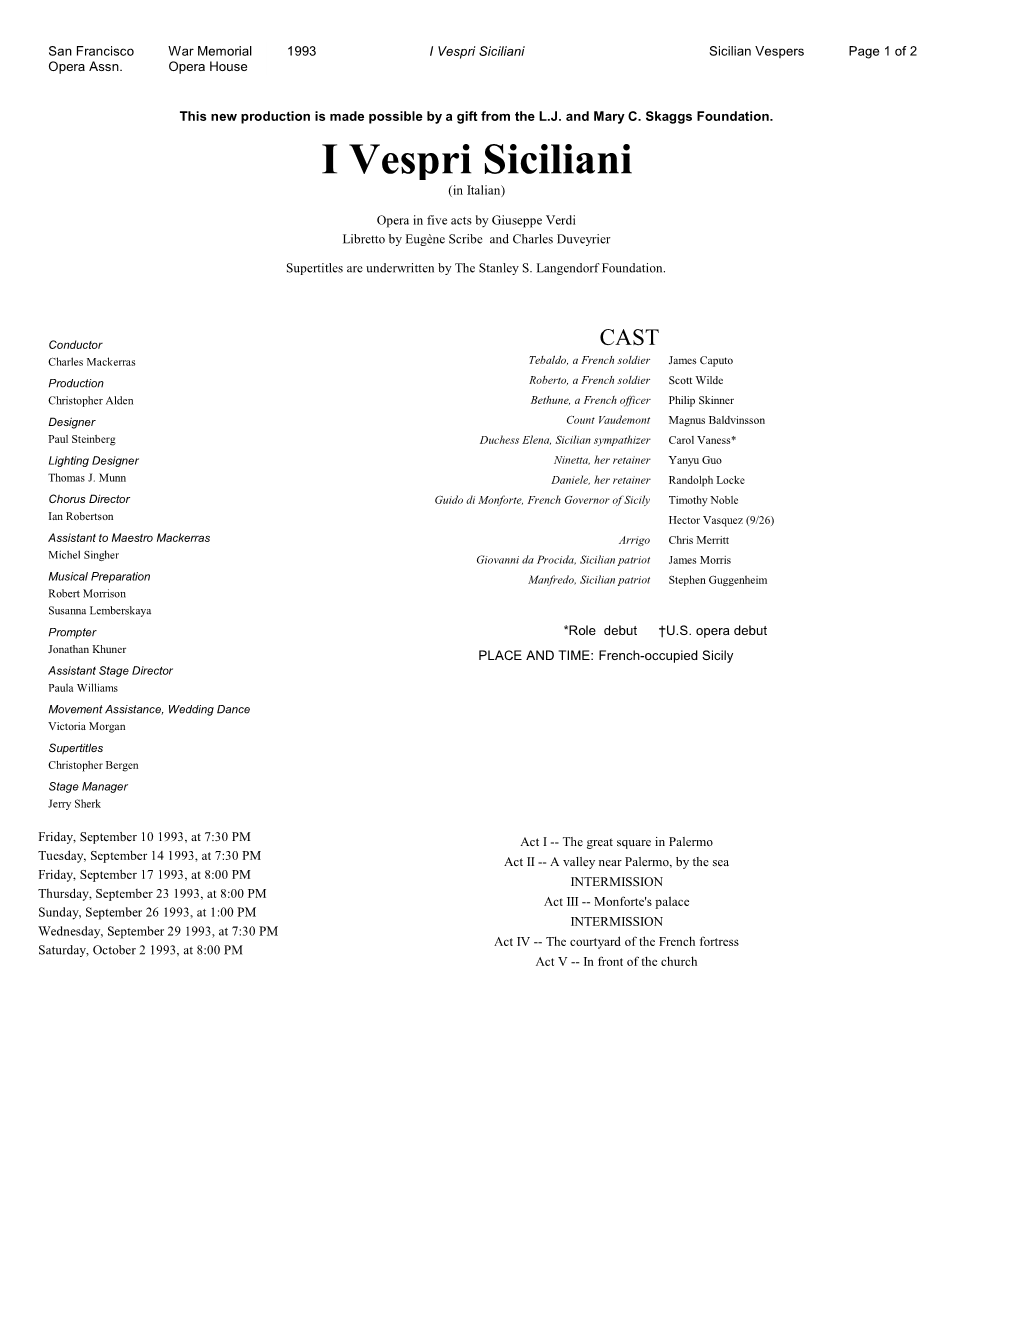 I Vespri Siciliani Sicilian Vespers Page 1 of 2 Opera Assn